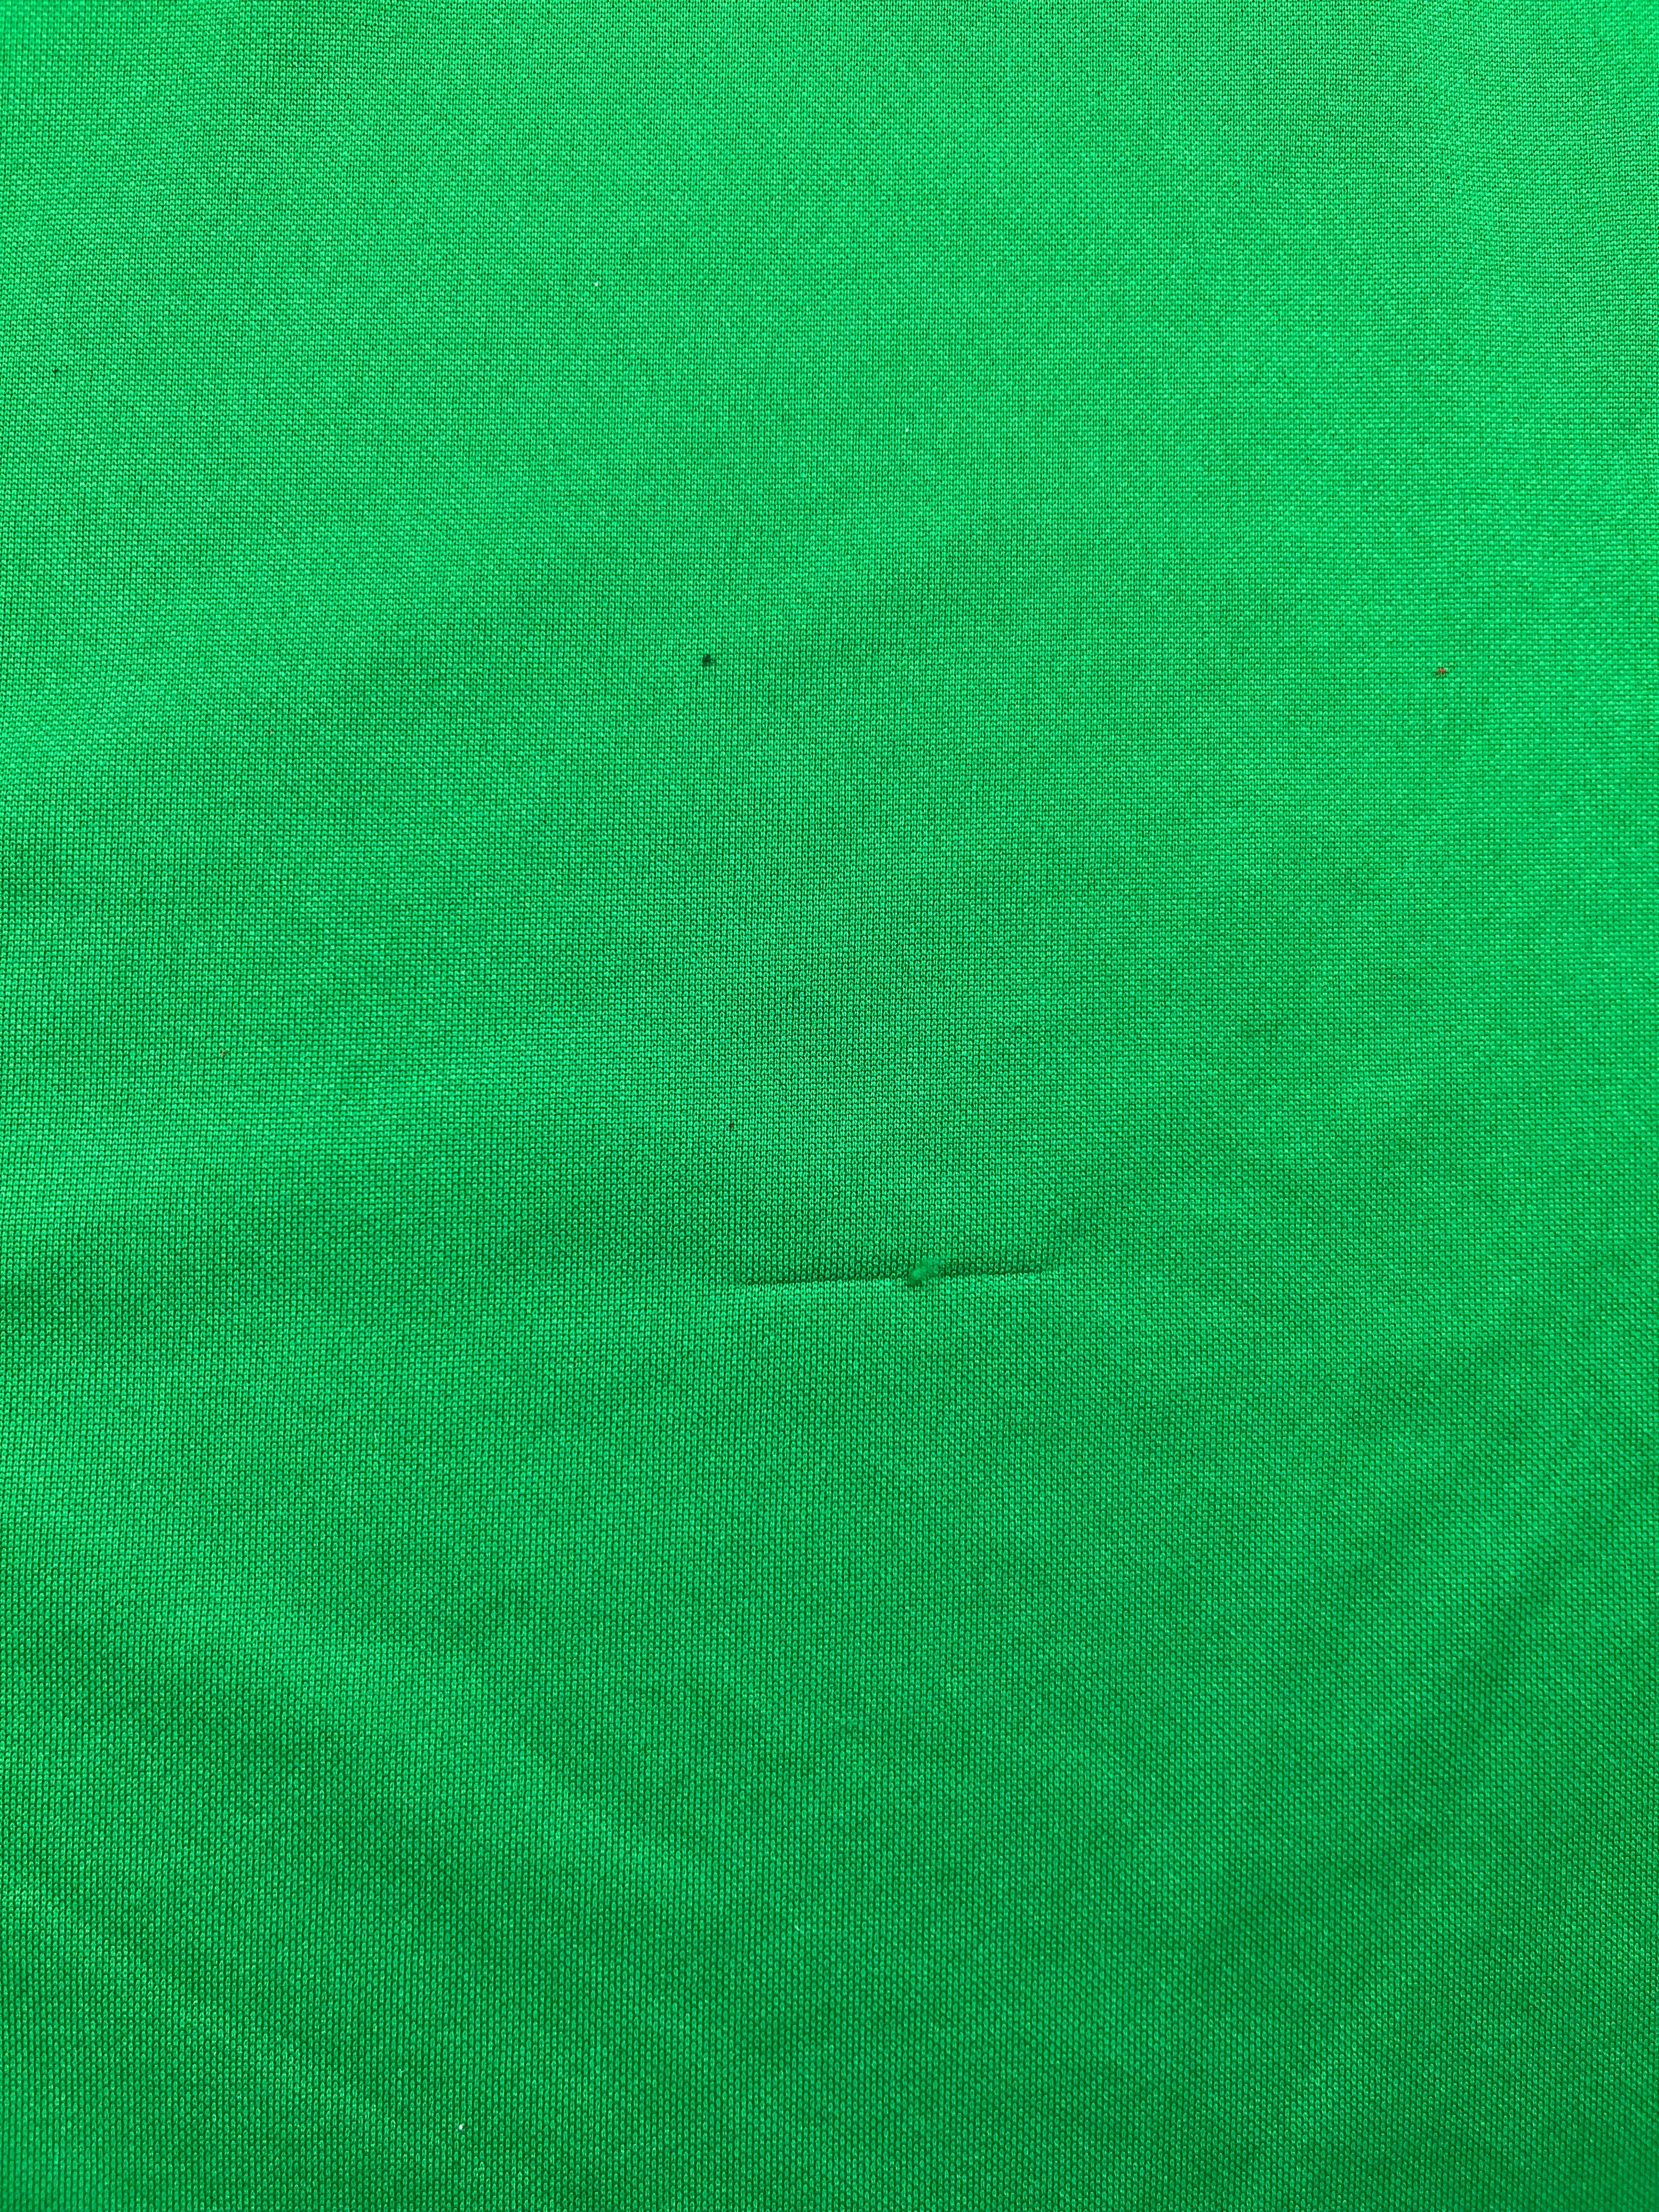 2015/16 Ipswich Town GK Shirt (XL) 6/10